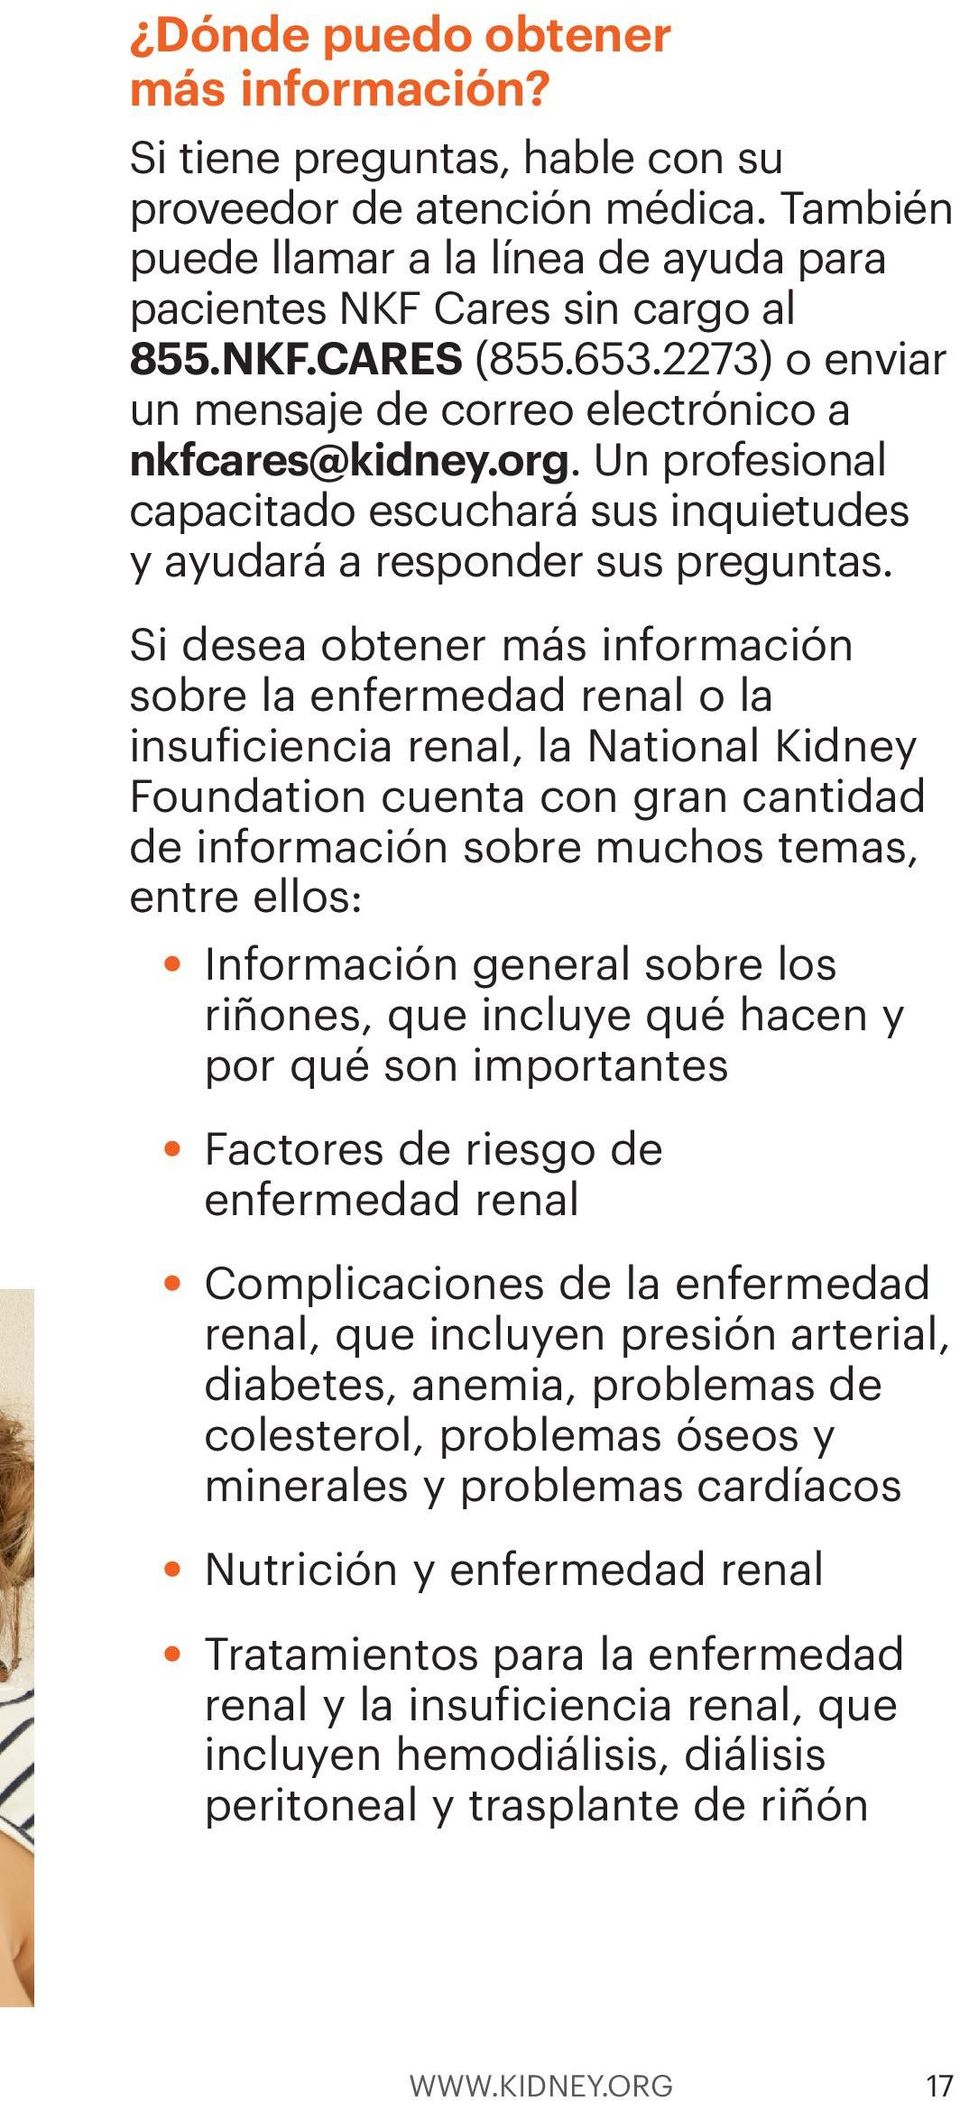 Si desea obtener más información sobre la enfermedad renal o la insuficiencia renal, la National Kidney Foundation cuenta con gran cantidad de información sobre muchos temas, entre ellos: Información